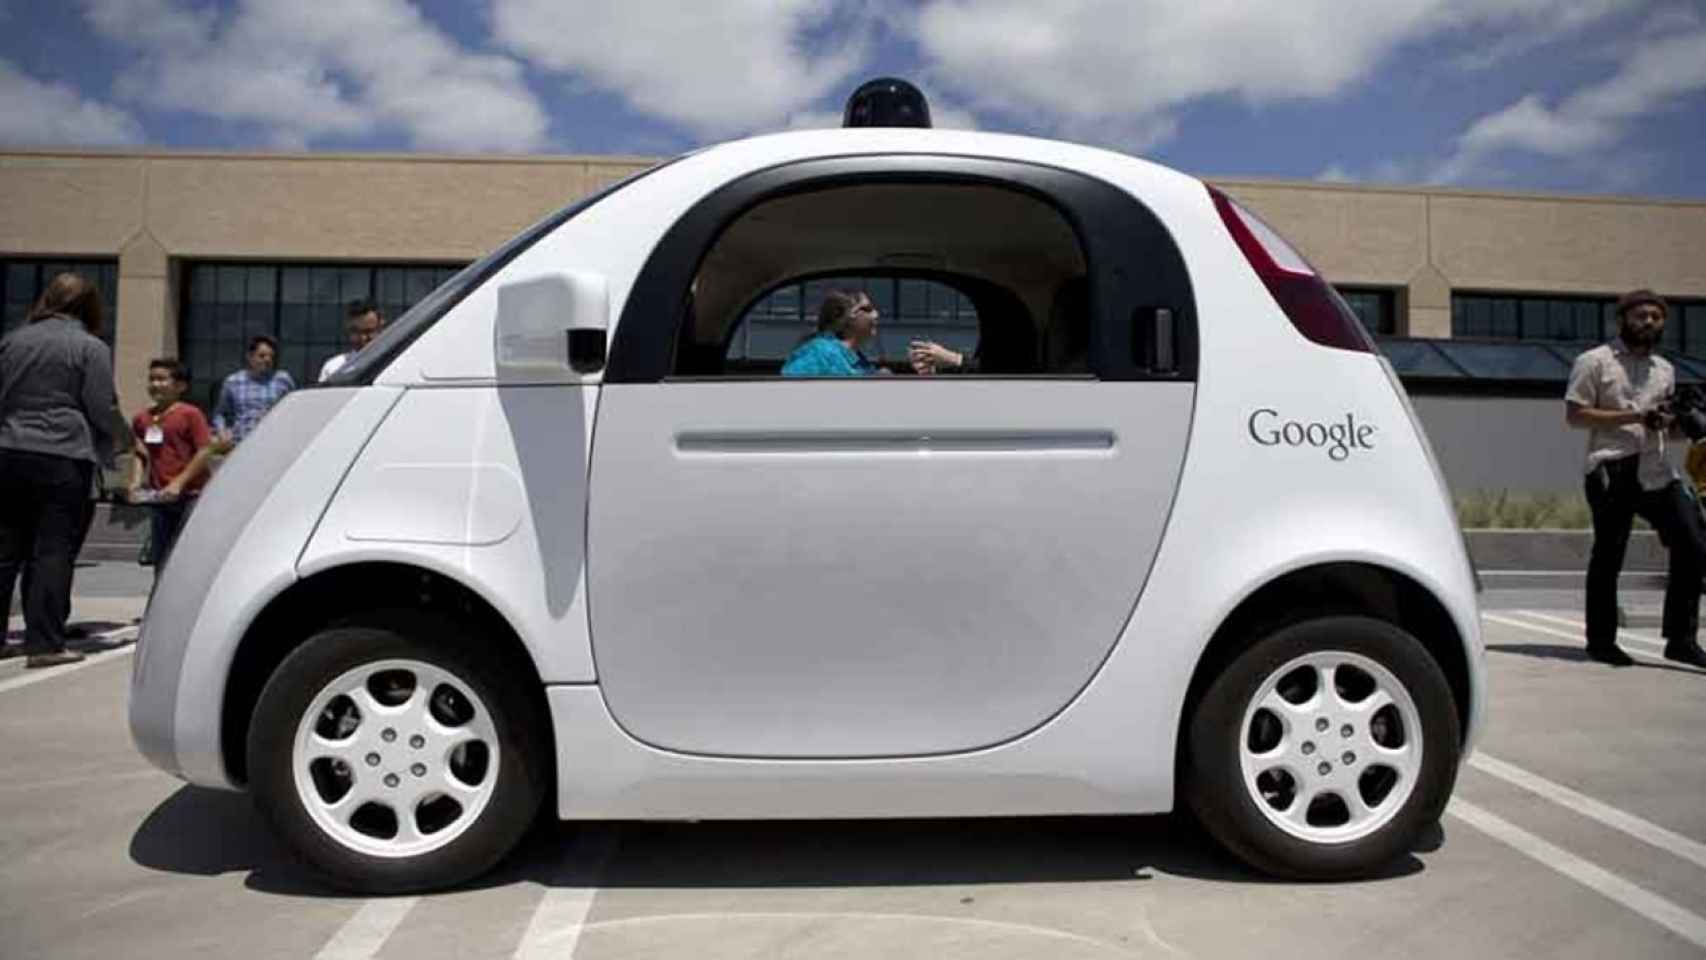 Año 2023: ¿los coches conducirán solos?